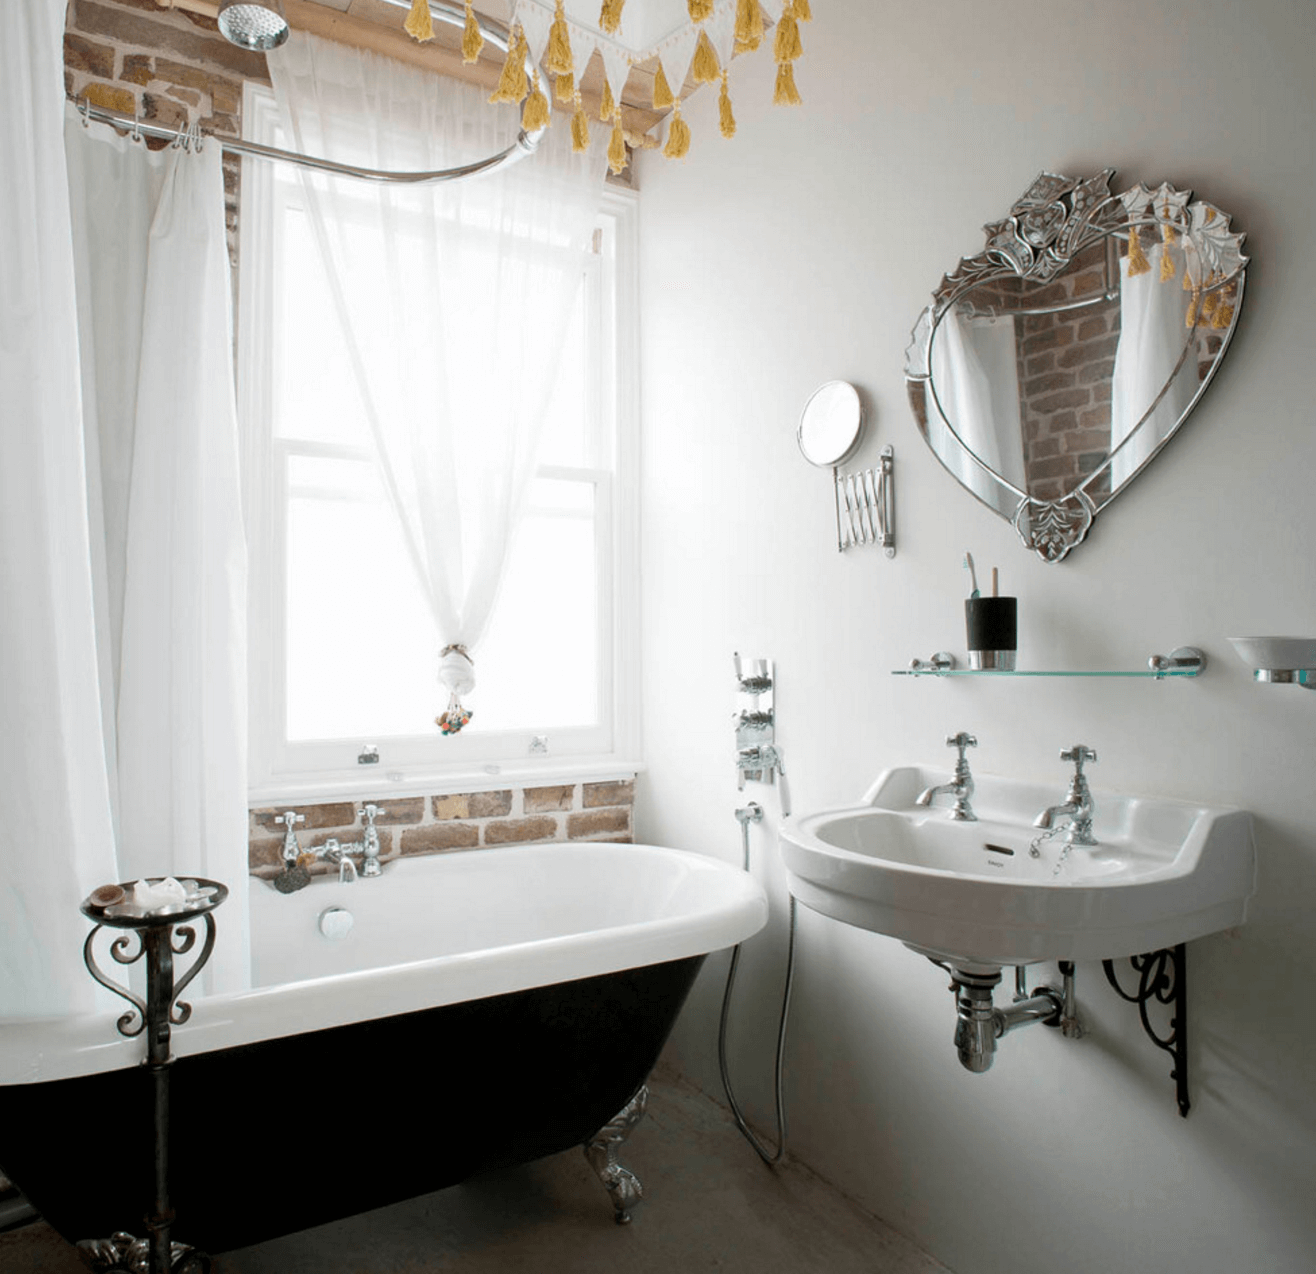 Необычная форма зеркала в интерьере ванной комнаты